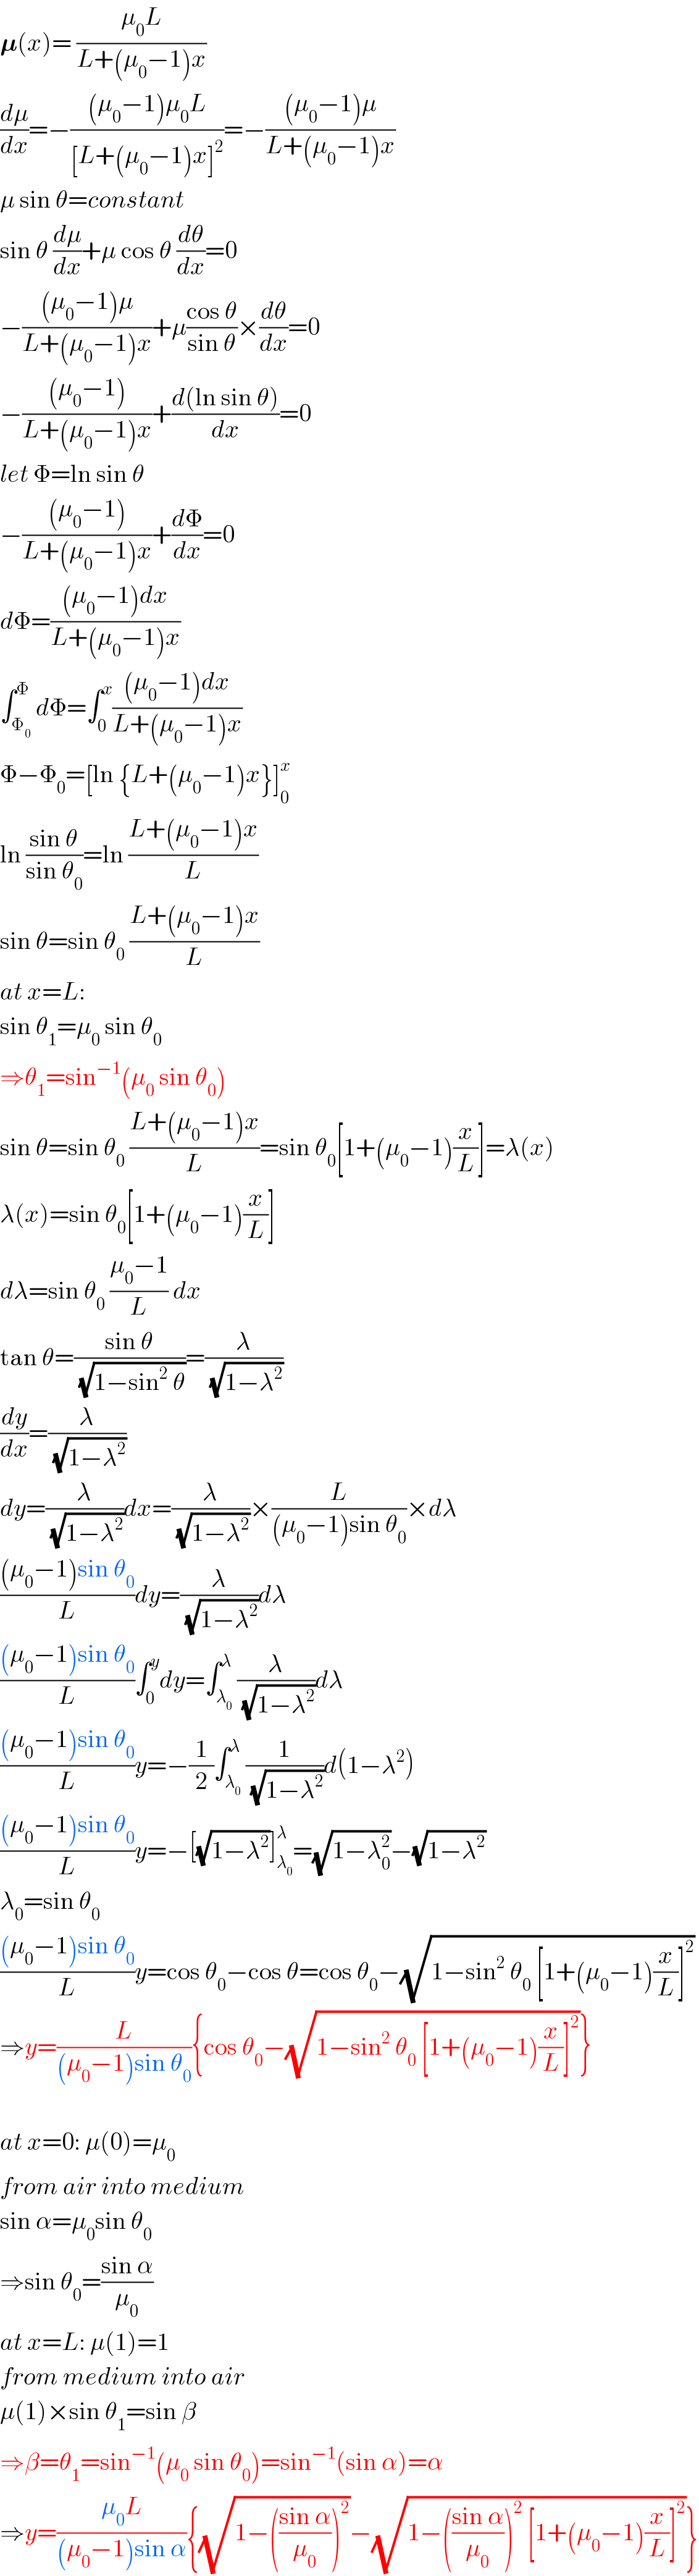 𝛍(x)= ((μ_0 L)/(L+(μ_0 −1)x))  (dμ/dx)=−(((μ_0 −1)μ_0 L)/([L+(μ_0 −1)x]^2 ))=−(((μ_0 −1)μ)/(L+(μ_0 −1)x))  μ sin θ=constant  sin θ (dμ/dx)+μ cos θ (dθ/dx)=0  −(((μ_0 −1)μ)/(L+(μ_0 −1)x))+μ((cos θ)/(sin θ))×(dθ/dx)=0  −(((μ_0 −1))/(L+(μ_0 −1)x))+((d(ln sin θ))/dx)=0  let Φ=ln sin θ  −(((μ_0 −1))/(L+(μ_0 −1)x))+(dΦ/dx)=0  dΦ=(((μ_0 −1)dx)/(L+(μ_0 −1)x))  ∫_Φ_0  ^Φ dΦ=∫_0 ^x (((μ_0 −1)dx)/(L+(μ_0 −1)x))  Φ−Φ_0 =[ln {L+(μ_0 −1)x}]_0 ^x   ln ((sin θ)/(sin θ_0 ))=ln ((L+(μ_0 −1)x)/L)  sin θ=sin θ_0  ((L+(μ_0 −1)x)/L)  at x=L:  sin θ_1 =μ_0  sin θ_0   ⇒θ_1 =sin^(−1) (μ_0  sin θ_0 )  sin θ=sin θ_0  ((L+(μ_0 −1)x)/L)=sin θ_0 [1+(μ_0 −1)(x/L)]=λ(x)  λ(x)=sin θ_0 [1+(μ_0 −1)(x/L)]  dλ=sin θ_0  ((μ_0 −1)/L) dx  tan θ=((sin θ)/(√(1−sin^2  θ)))=(λ/(√(1−λ^2 )))  (dy/dx)=(λ/(√(1−λ^2 )))  dy=(λ/(√(1−λ^2 )))dx=(λ/(√(1−λ^2 )))×(L/((μ_0 −1)sin θ_0 ))×dλ  (((μ_0 −1)sin θ_0 )/L)dy=(λ/(√(1−λ^2 )))dλ  (((μ_0 −1)sin θ_0 )/L)∫_0 ^y dy=∫_λ_0  ^λ (λ/(√(1−λ^2 )))dλ  (((μ_0 −1)sin θ_0 )/L)y=−(1/2)∫_λ_0  ^λ (1/(√(1−λ^2 )))d(1−λ^2 )  (((μ_0 −1)sin θ_0 )/L)y=−[(√(1−λ^2 ))]_λ_0  ^λ =(√(1−λ_0 ^2 ))−(√(1−λ^2 ))  λ_0 =sin θ_0   (((μ_0 −1)sin θ_0 )/L)y=cos θ_0 −cos θ=cos θ_0 −(√(1−sin^2  θ_0  [1+(μ_0 −1)(x/L)]^2 ))  ⇒y=(L/((μ_0 −1)sin θ_0 )){cos θ_0 −(√(1−sin^2  θ_0  [1+(μ_0 −1)(x/L)]^2 ))}    at x=0: μ(0)=μ_0   from air into medium  sin α=μ_0 sin θ_0   ⇒sin θ_0 =((sin α)/μ_0 )  at x=L: μ(1)=1  from medium into air  μ(1)×sin θ_1 =sin β  ⇒β=θ_1 =sin^(−1) (μ_0  sin θ_0 )=sin^(−1) (sin α)=α  ⇒y=((μ_0 L)/((μ_0 −1)sin α)){(√(1−(((sin α)/μ_0 ))^2 ))−(√(1−(((sin α)/μ_0 ))^2  [1+(μ_0 −1)(x/L)]^2 ))}  